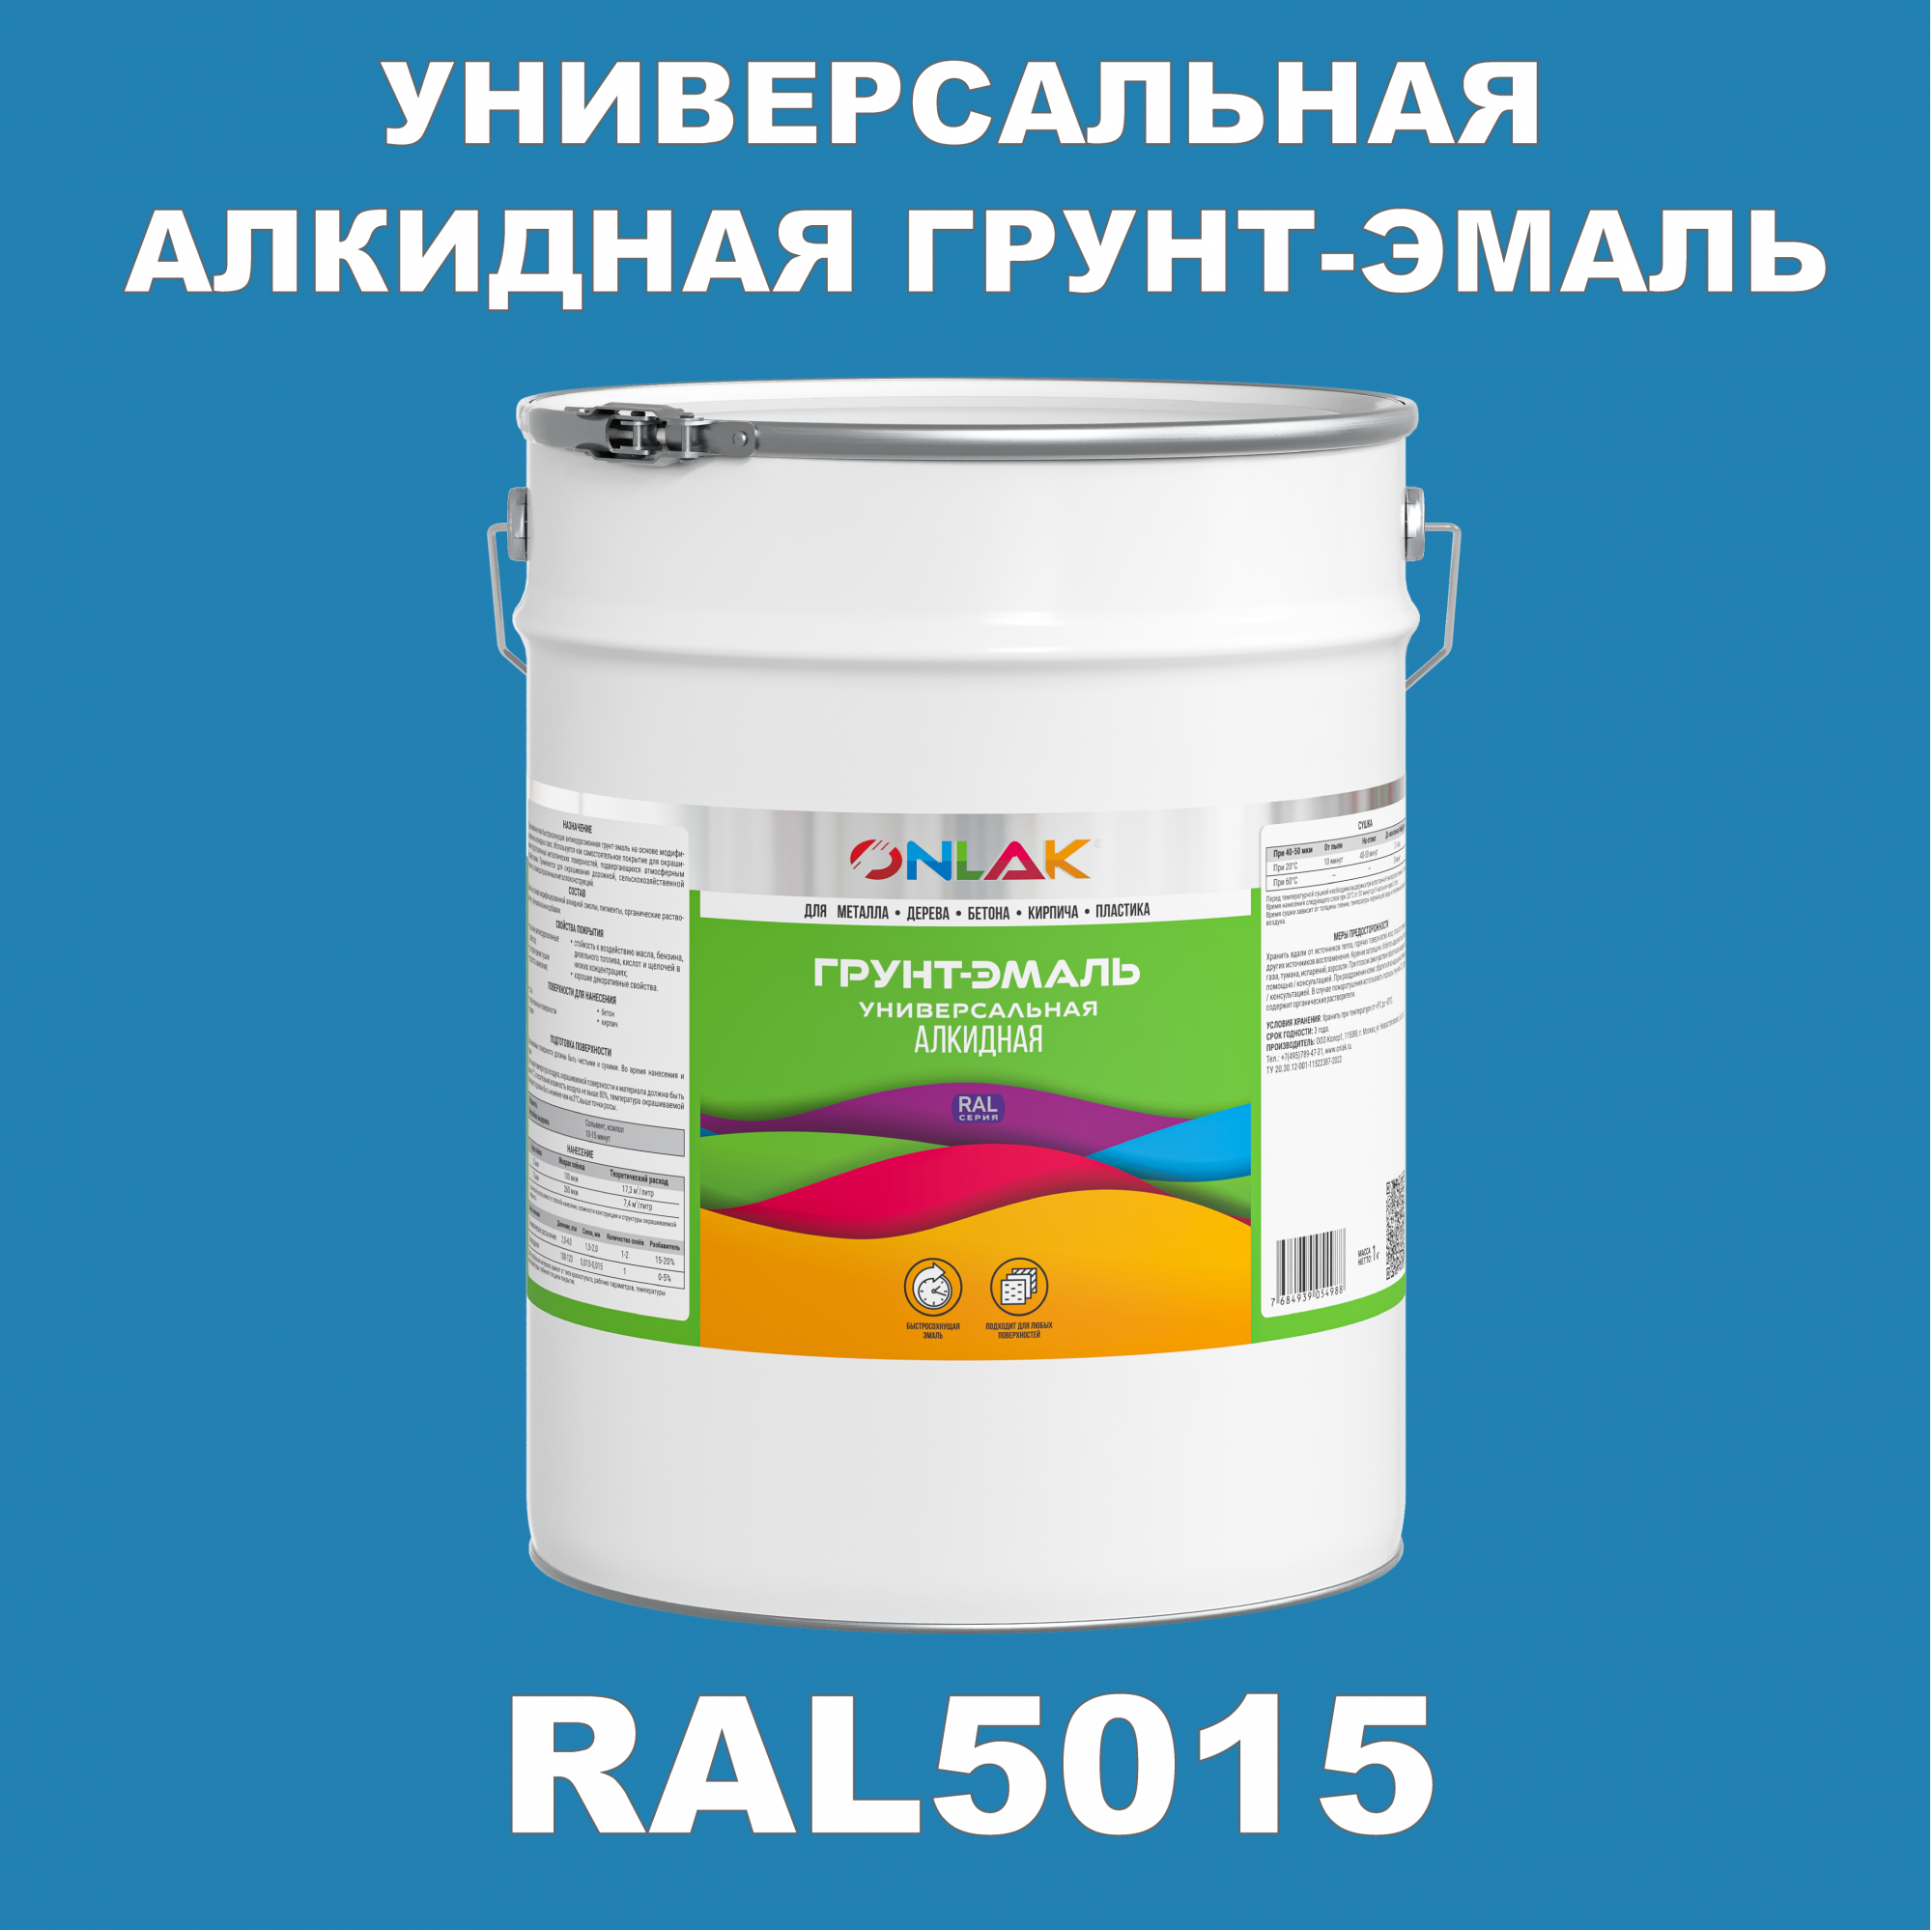 Грунт-эмаль ONLAK 1К RAL5015 антикоррозионная алкидная по металлу по ржавчине 20 кг грунт эмаль аэрозольная престиж 3в1 алкидная коричневая ral 8017 425 мл 0 425 кг